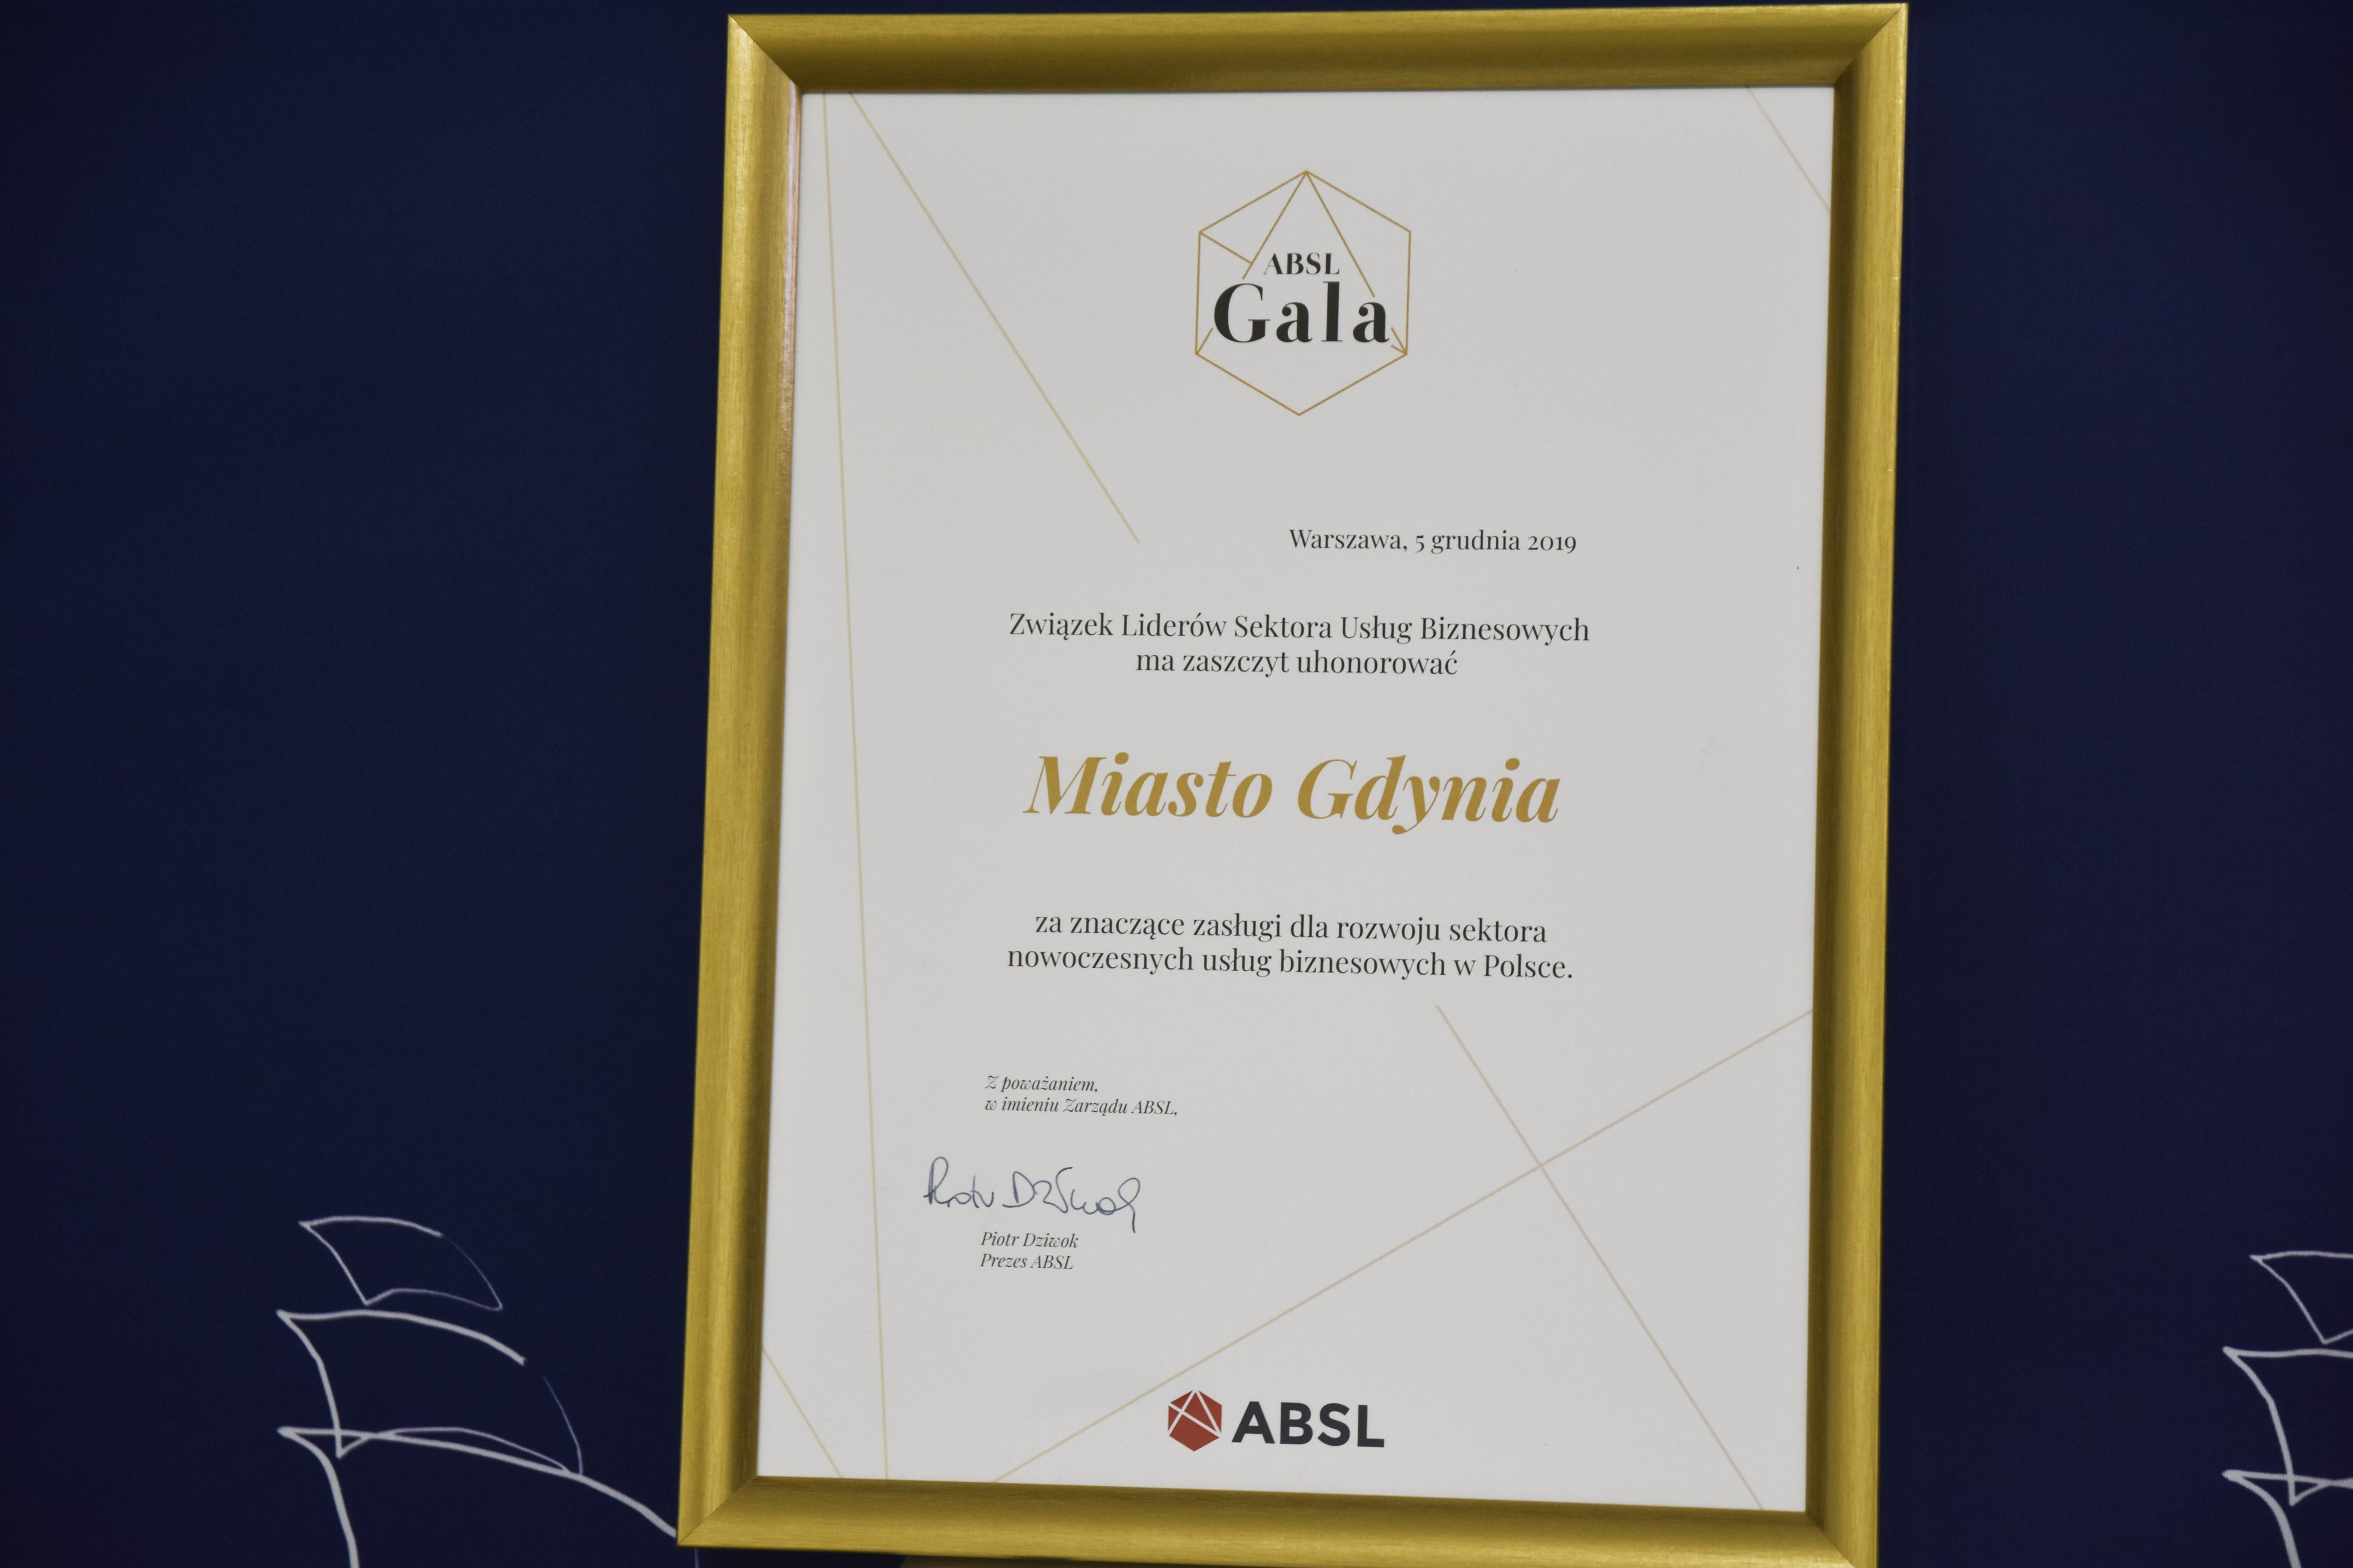 Wyróżnienie dla Gdyni w kategorii Miast Wspierających, przyznane przez Związek Liderów Sektora Usług Biznesowych (ABSL). 